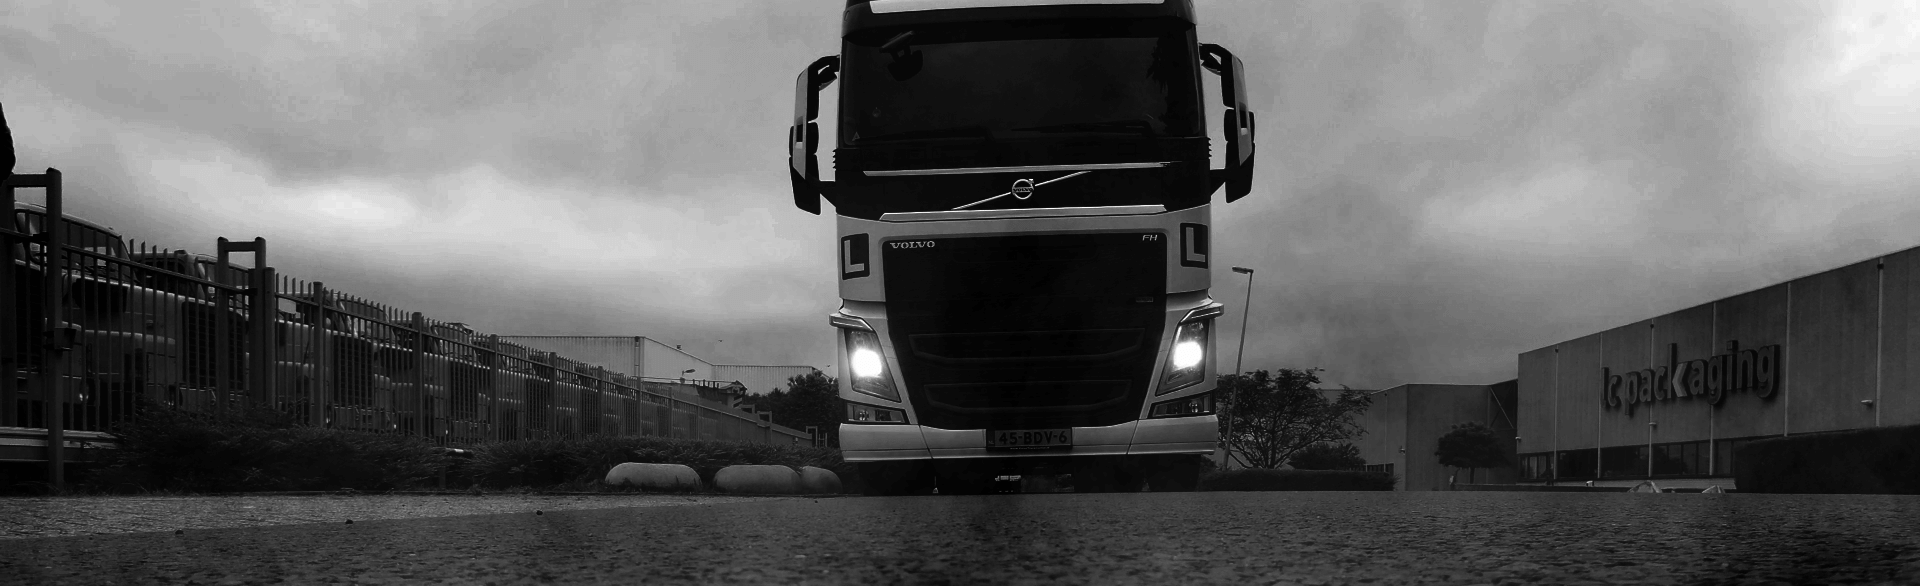 Les vrachtwagen zwart wit